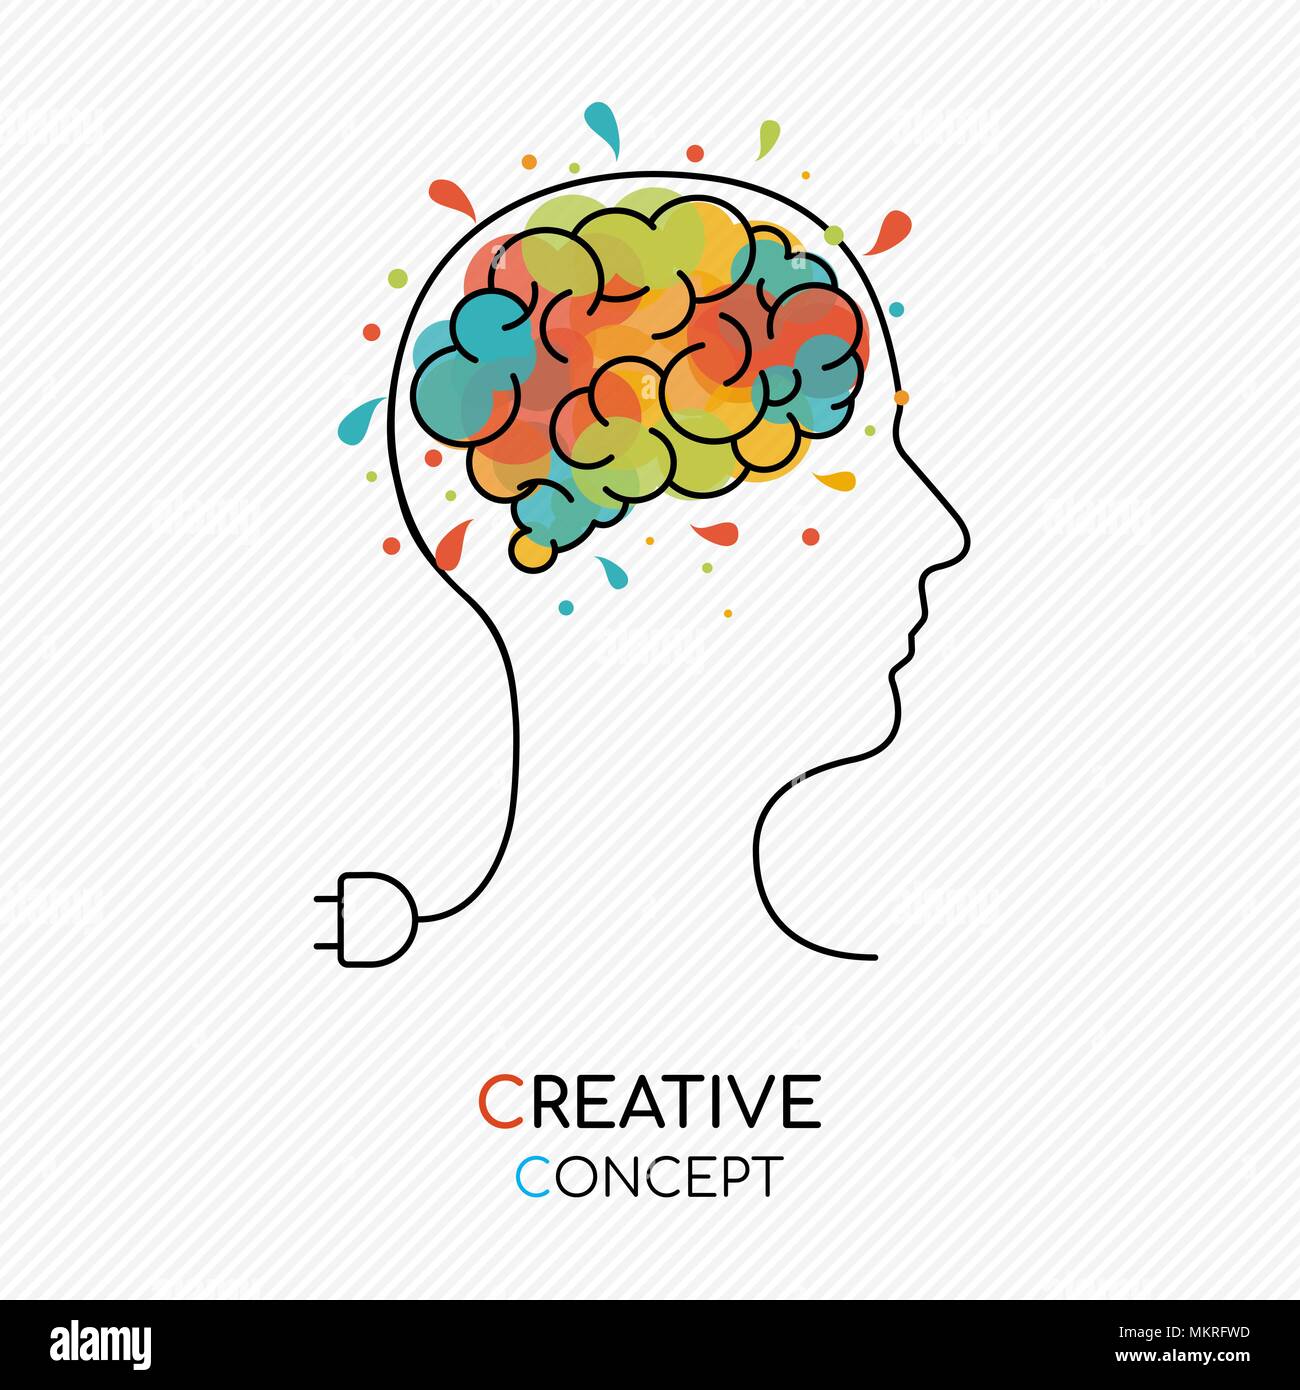 La pensée créative concept illustration style du contour avec tête humaine comme le fil d'alimentation et d'art colorés splash cerveau. Vecteur EPS10. Illustration de Vecteur